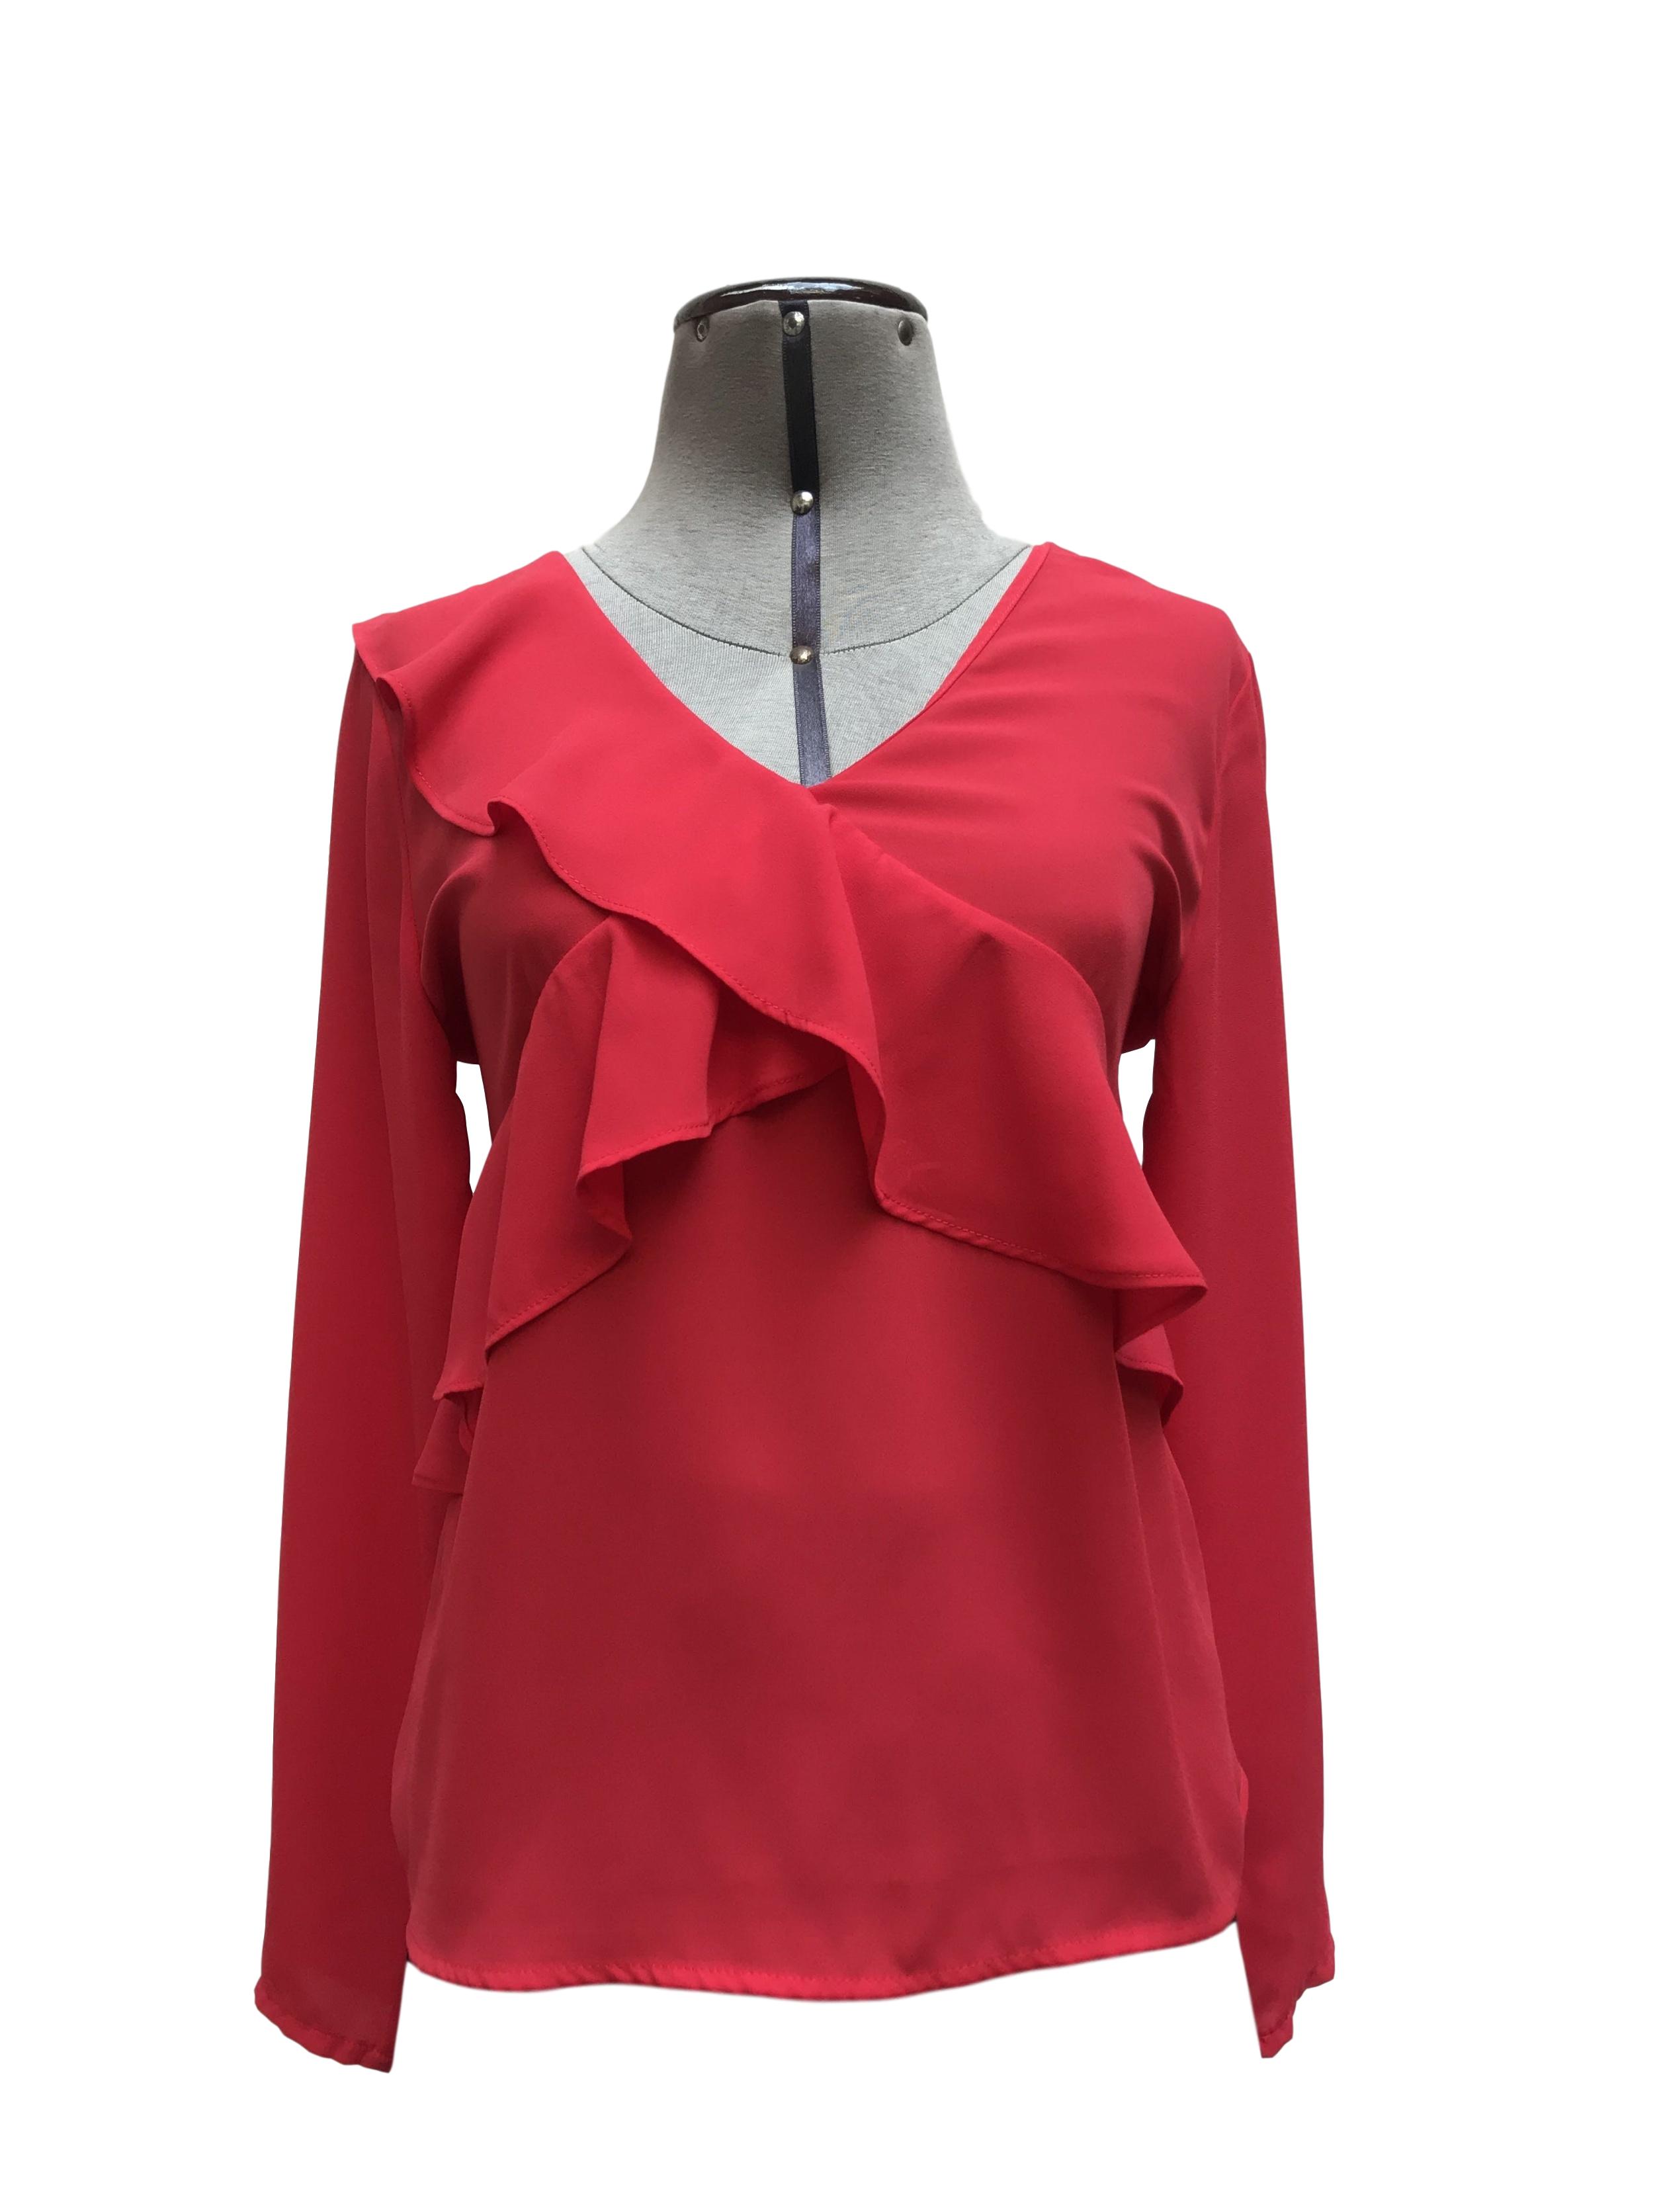 Blusa Malabar roja tela tipo crepe, manga larga, escote cruzado con  volantes y escote en la espalda. Precio original S/ 100 Talla S | Las  Traperas